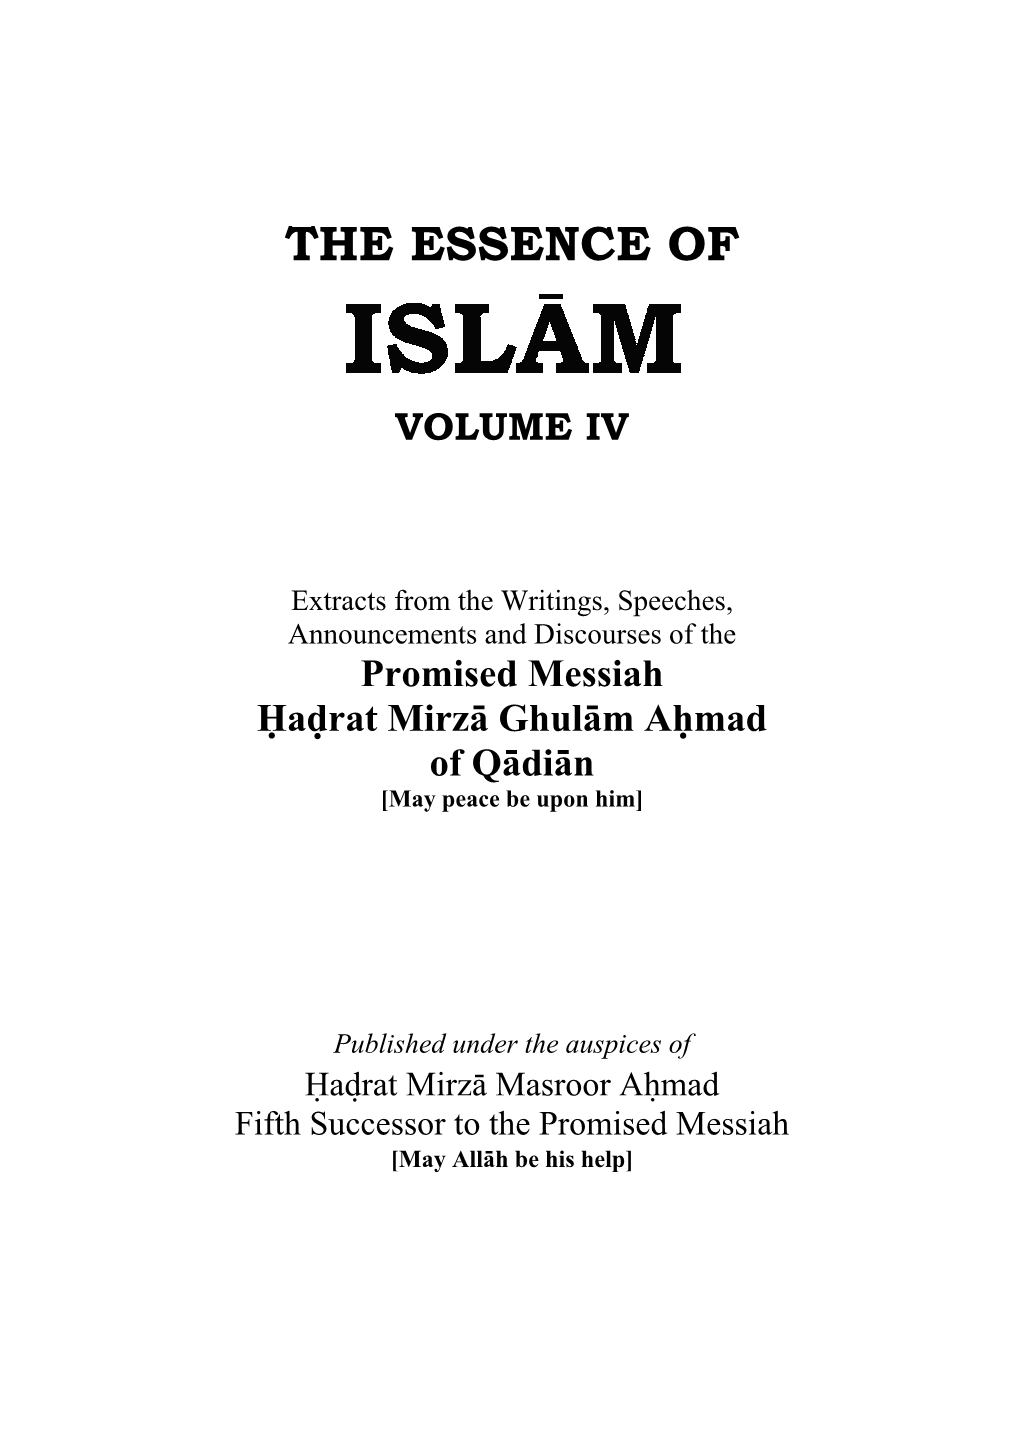 Essence of Islam Volume IV